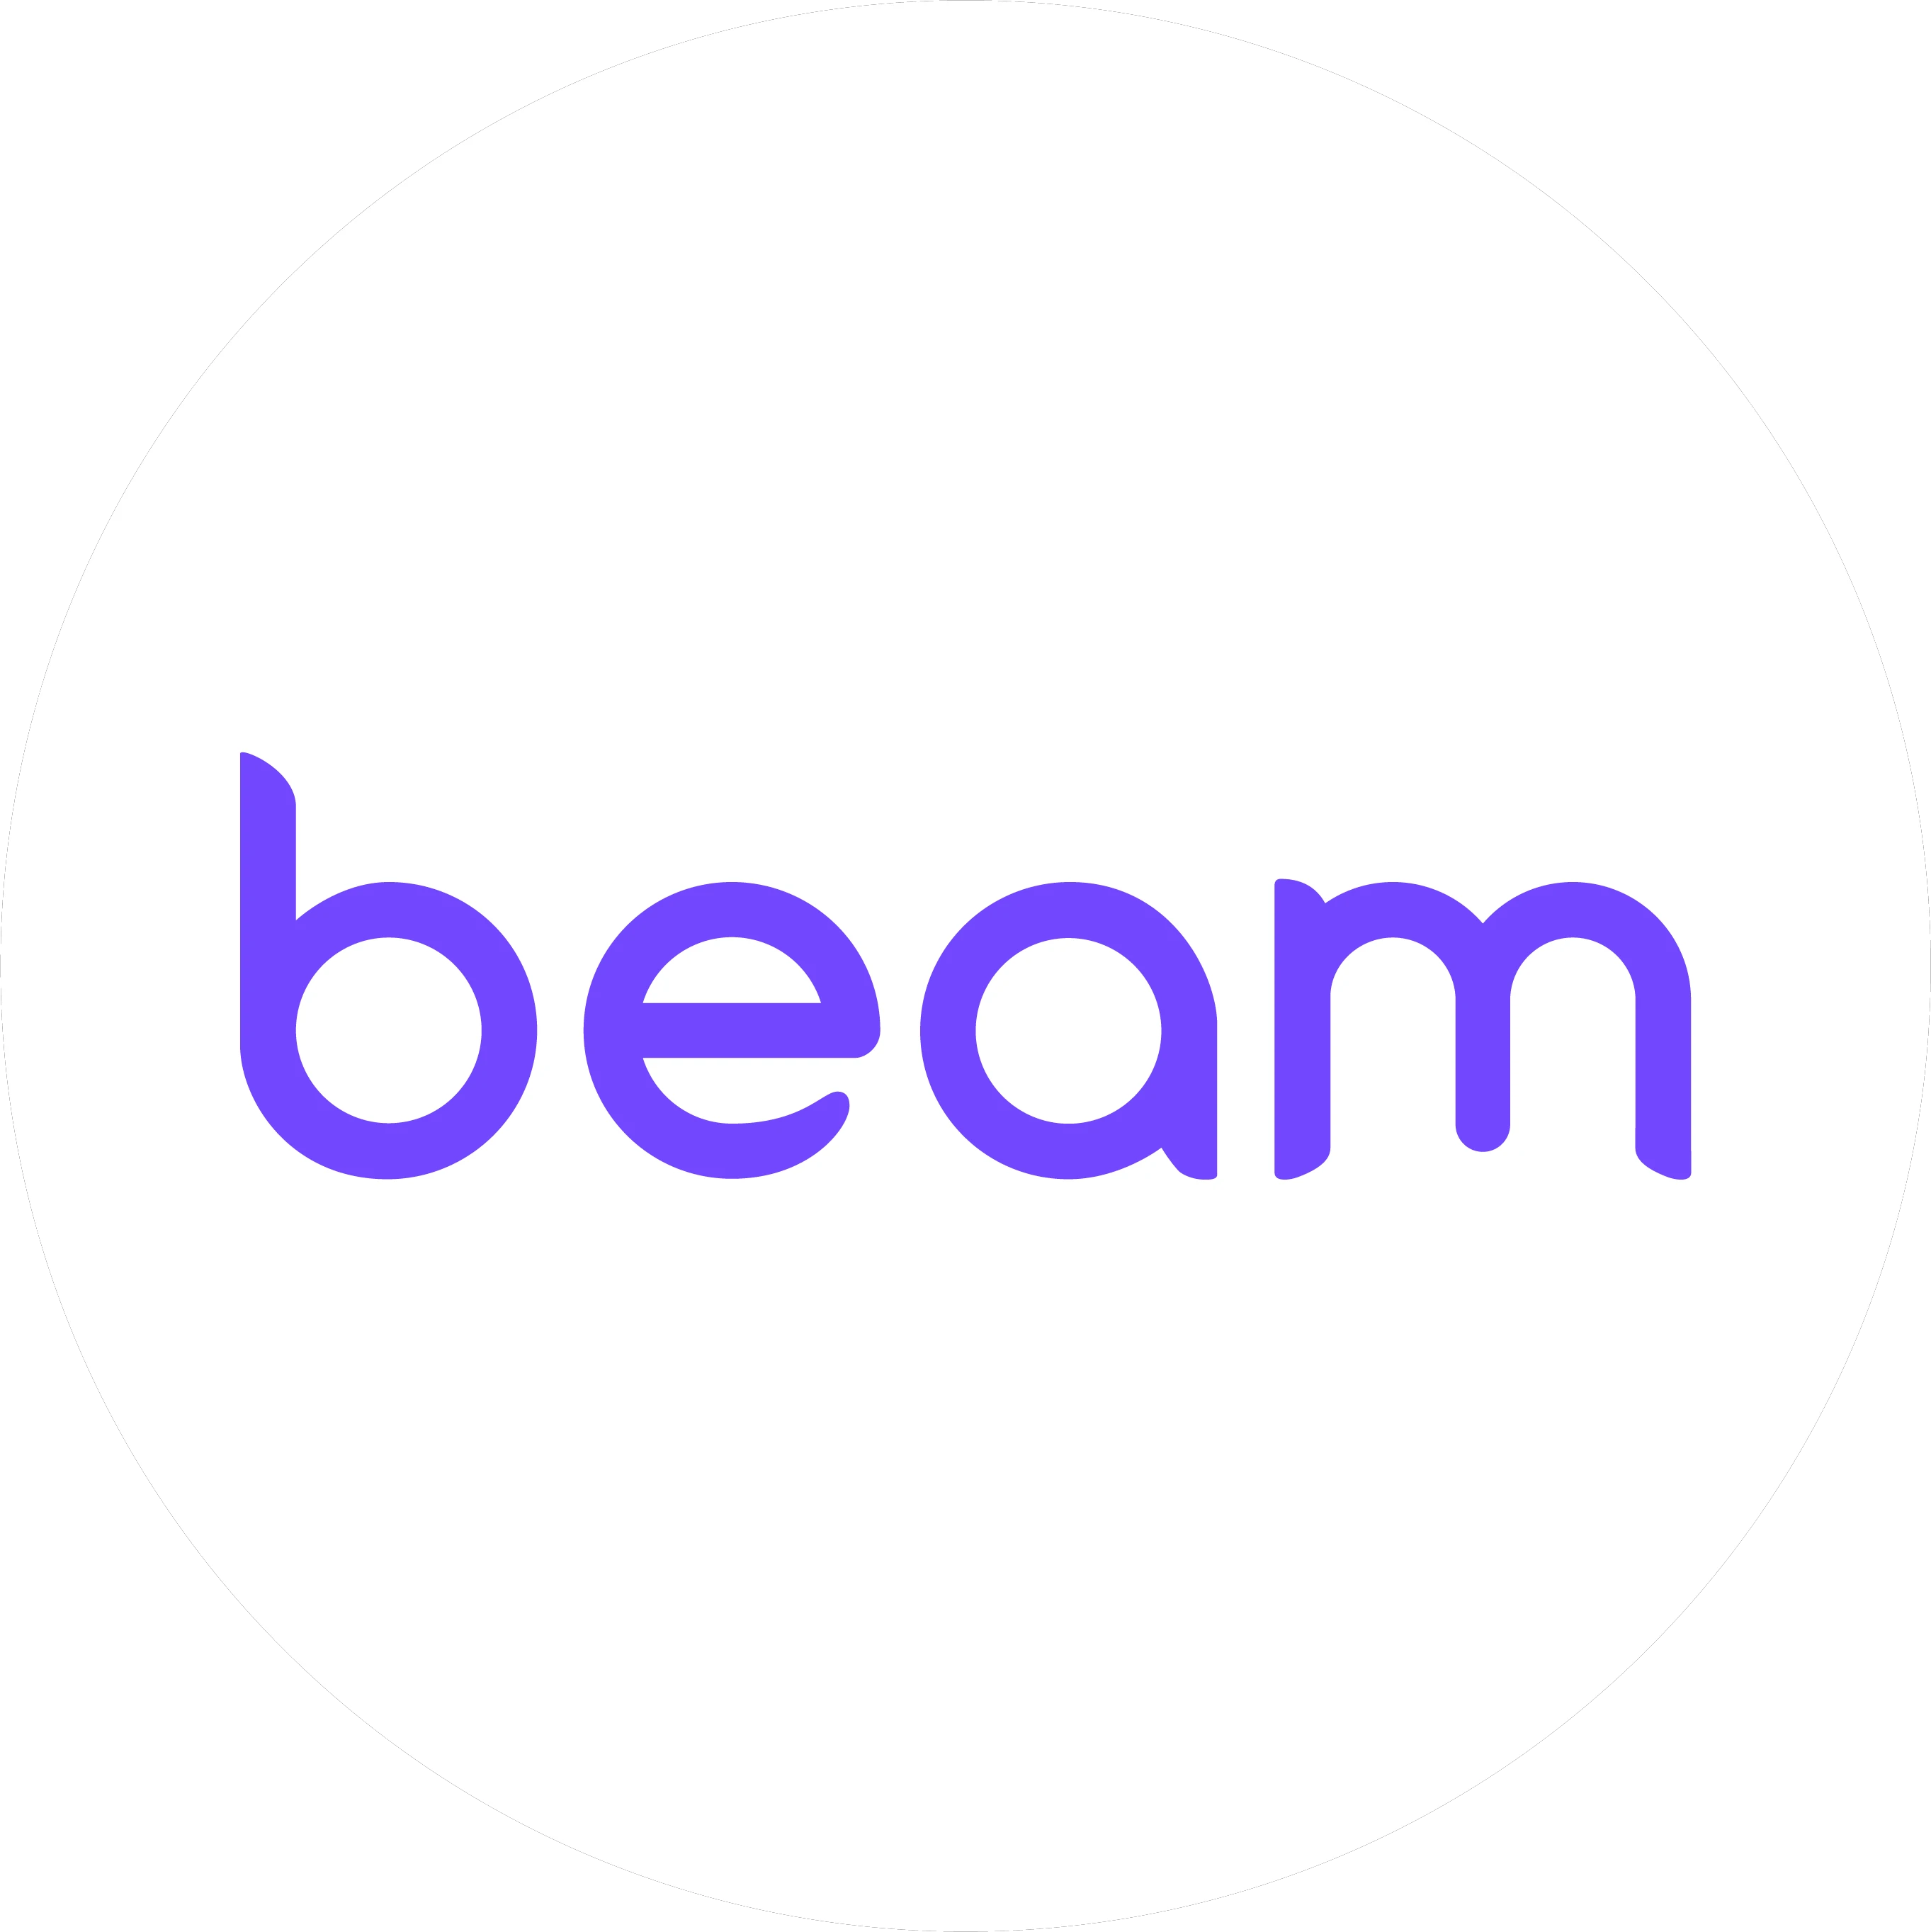  Ride Beam promo code